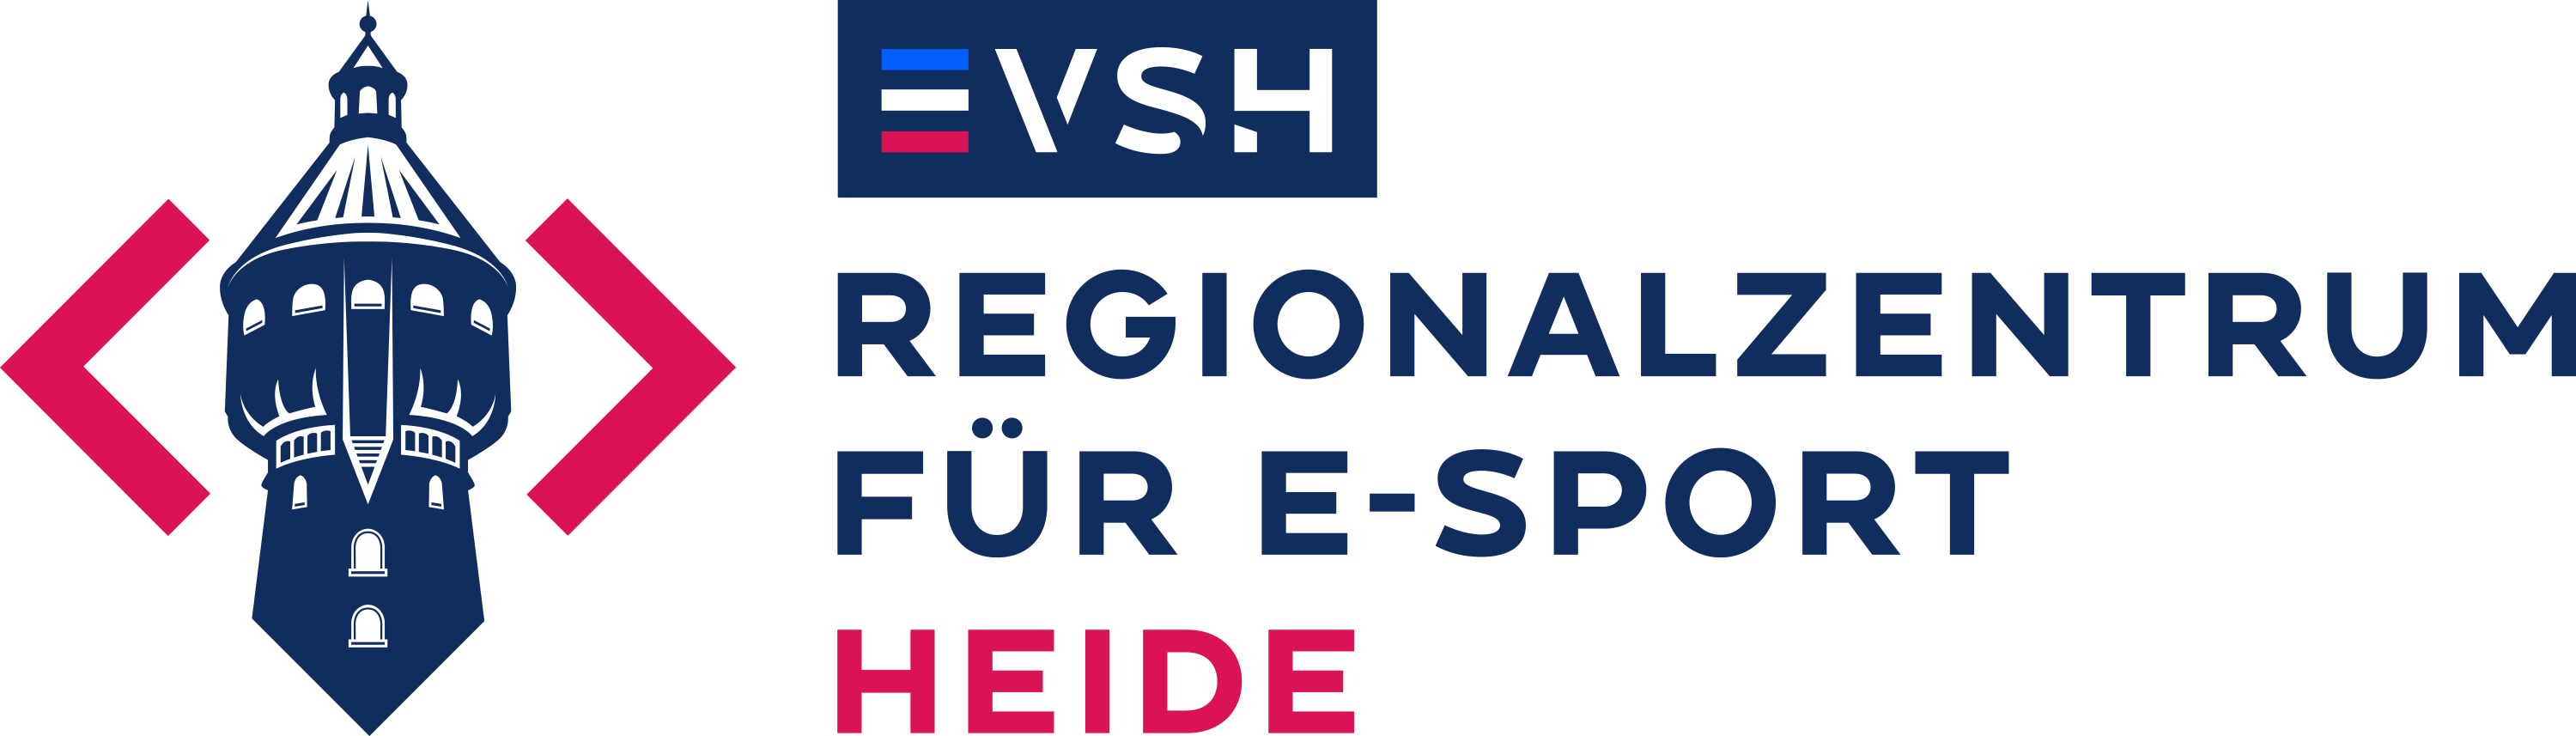 EVSH E-Sport Regionalzentrum Heide Logo